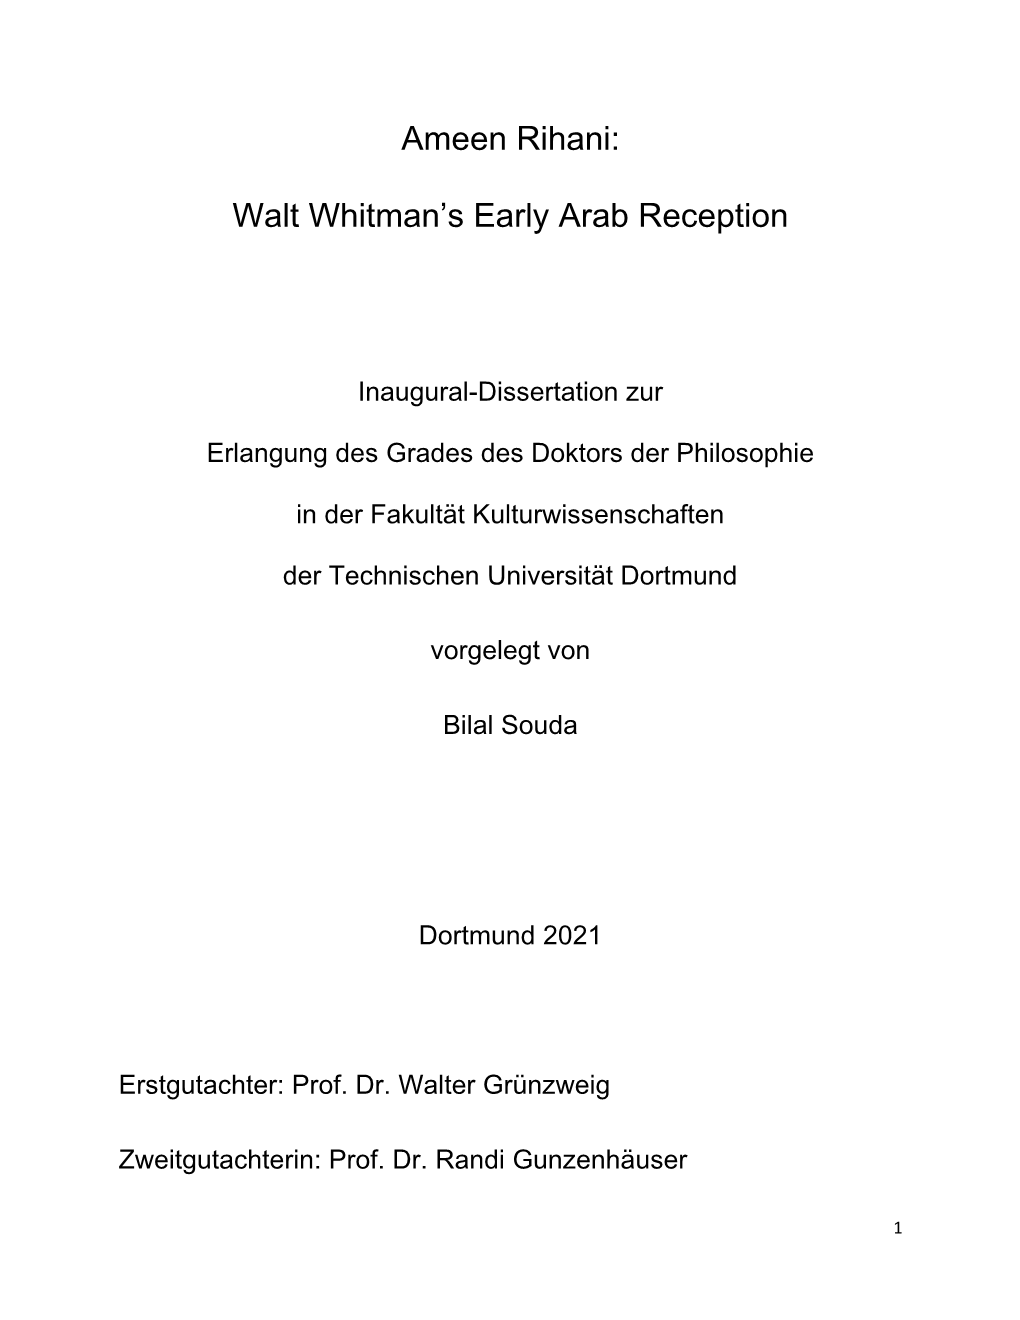 Walt Whitman's Early Arab Reception